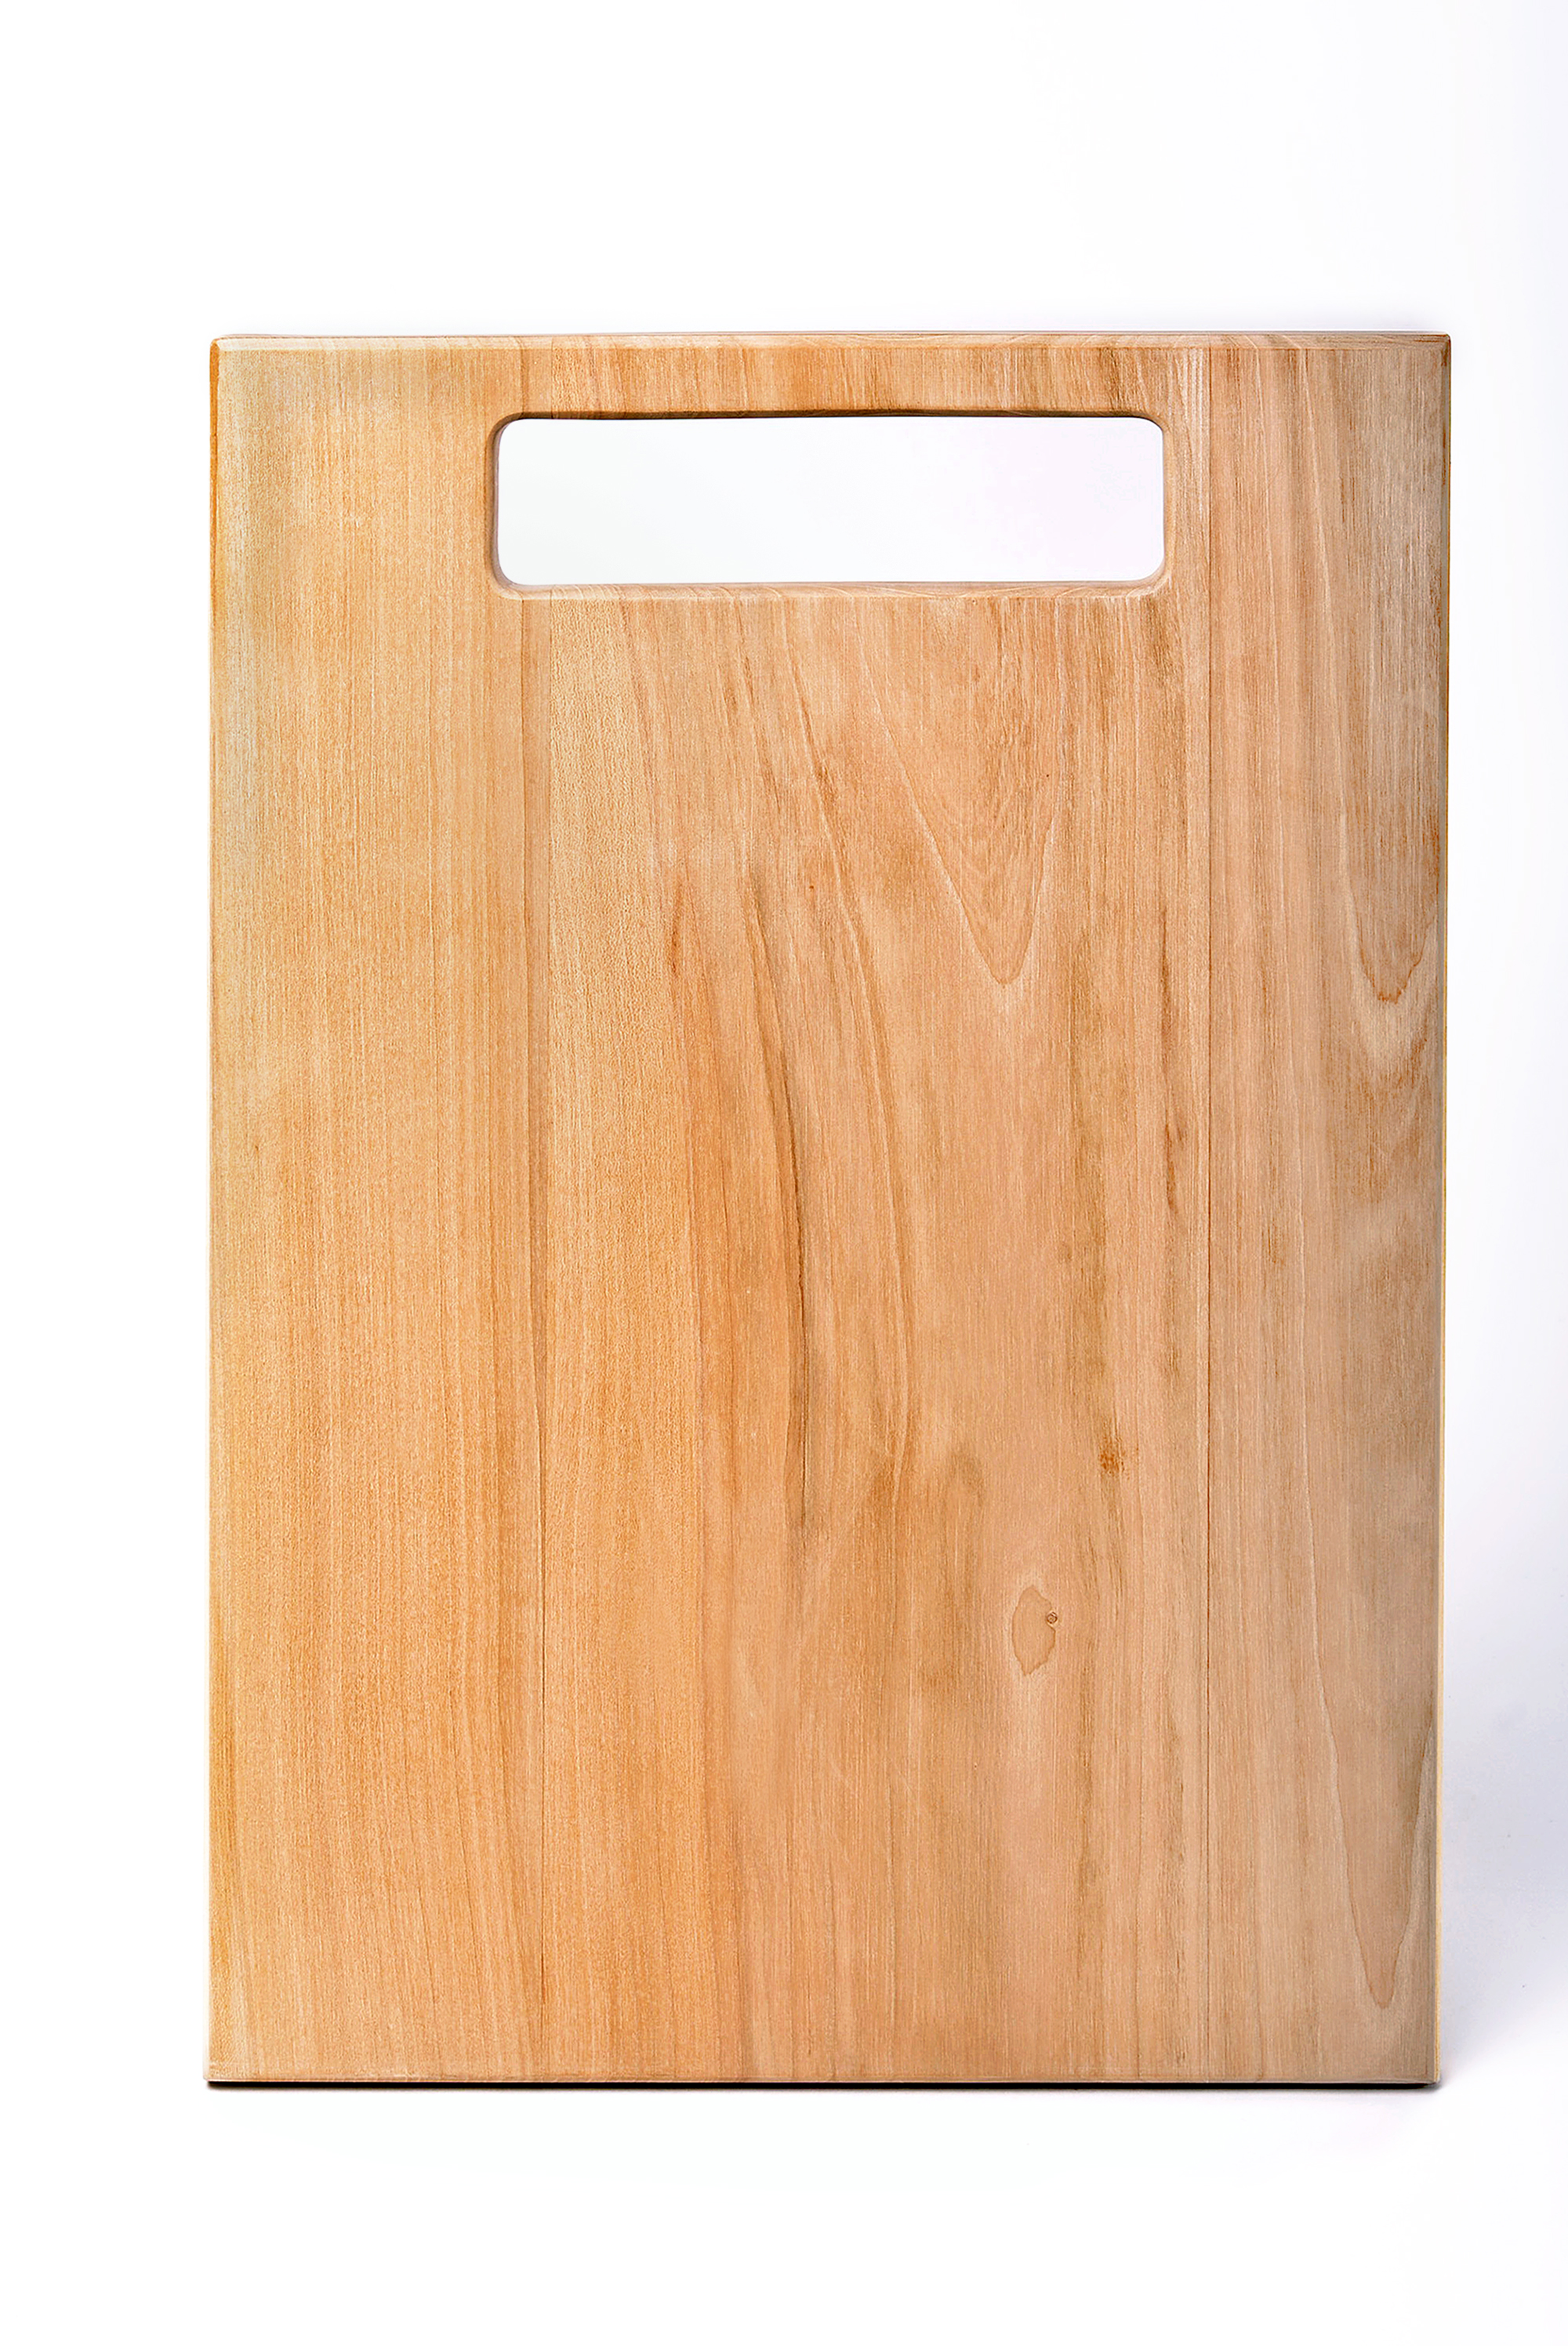 Разделочная доска ручной работы кухонные принадлежности домашний декор деревянная доска фото 4